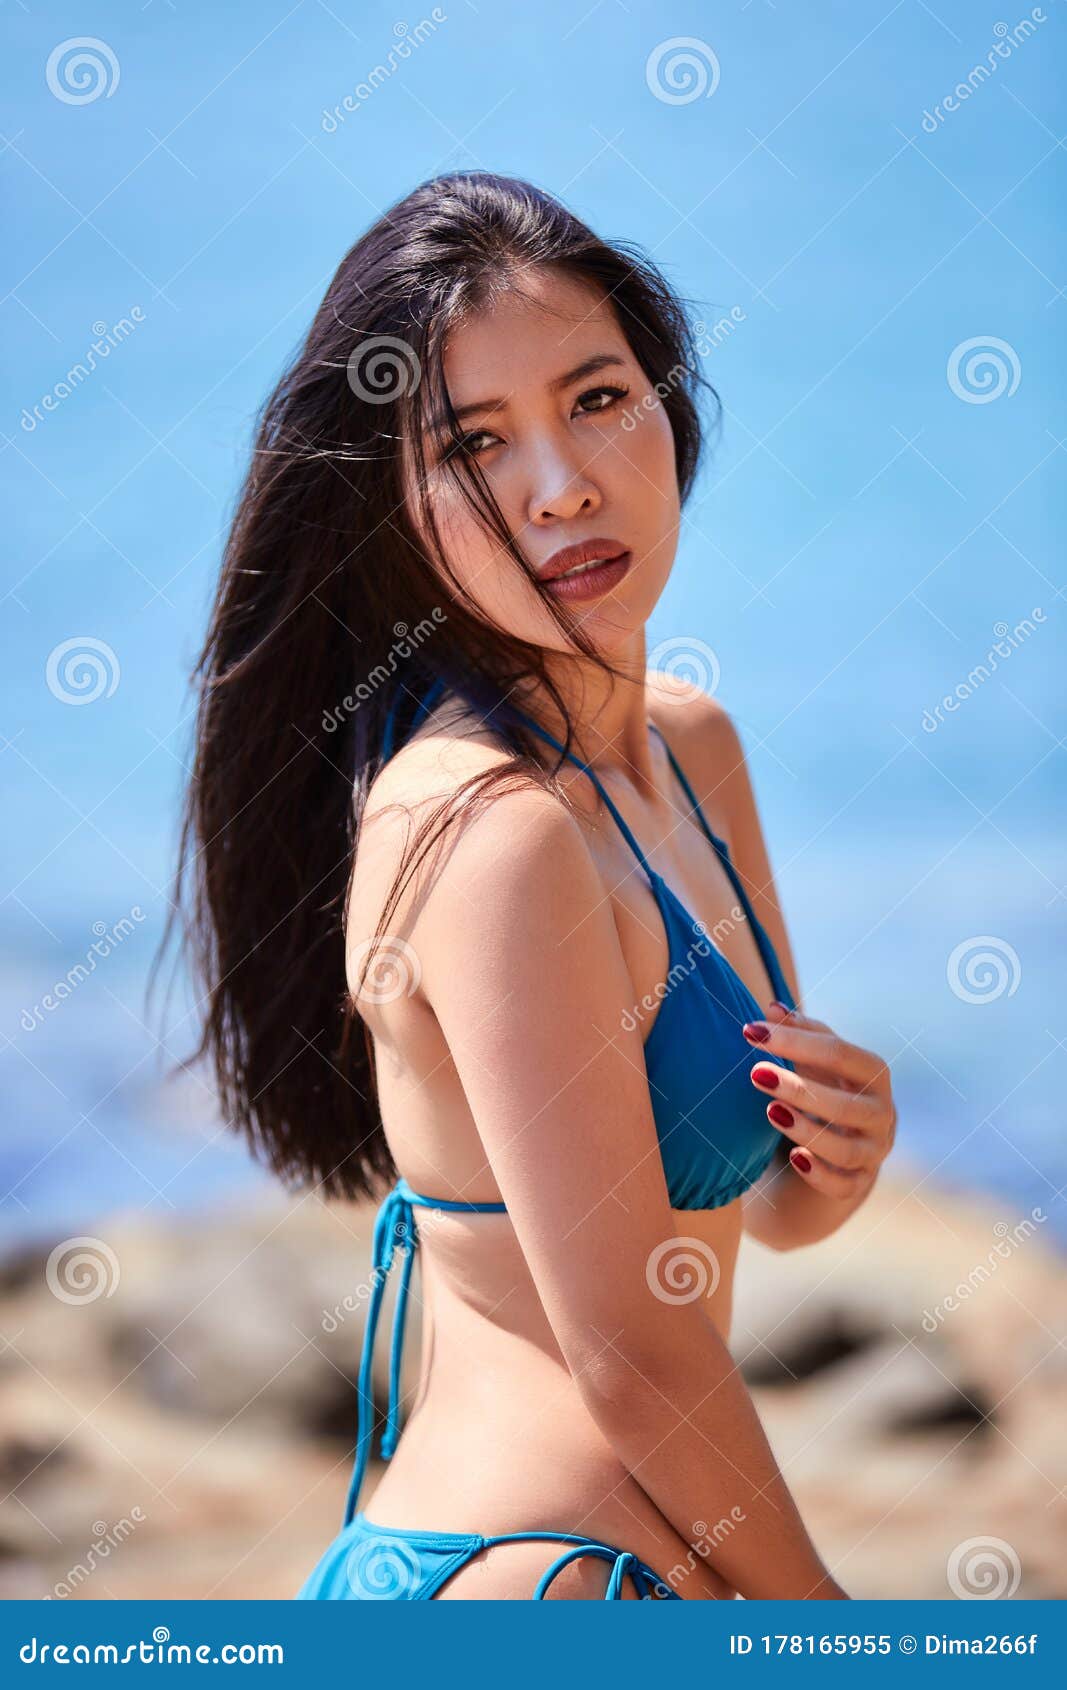 沙滩上摆姿势的蓝色比基尼美女特写库存图片. 图片包括有成人, 摆在  image